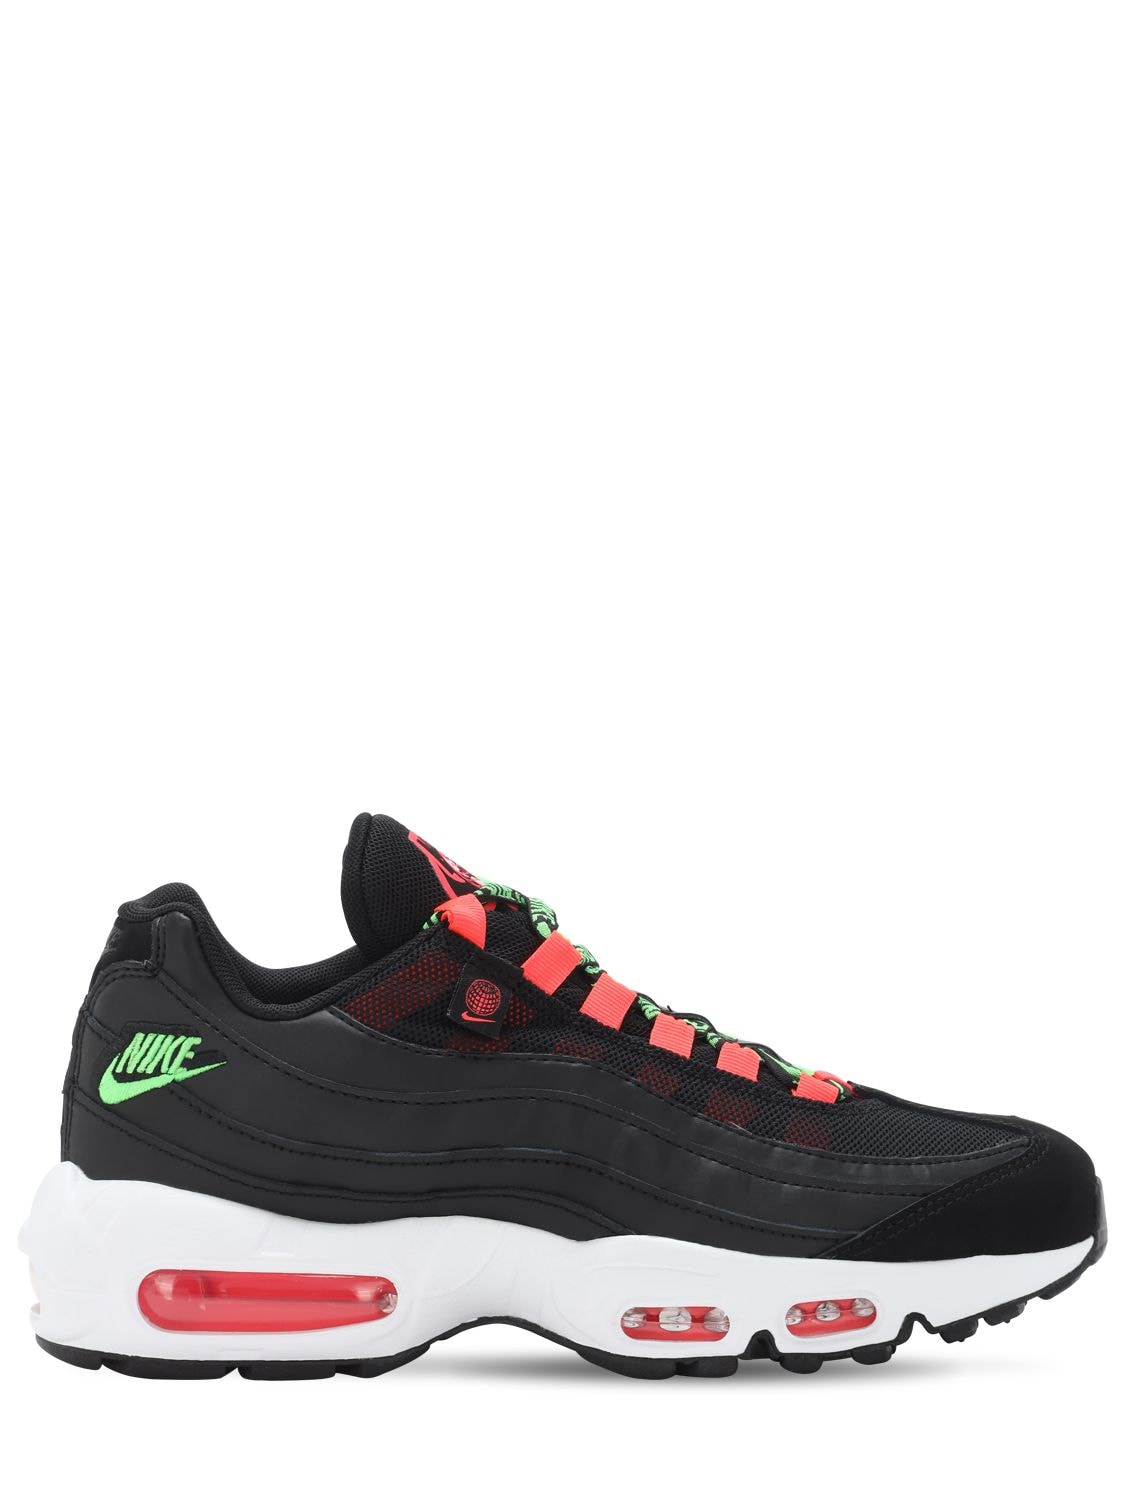 Nike Air Max 95 Se Sneakers